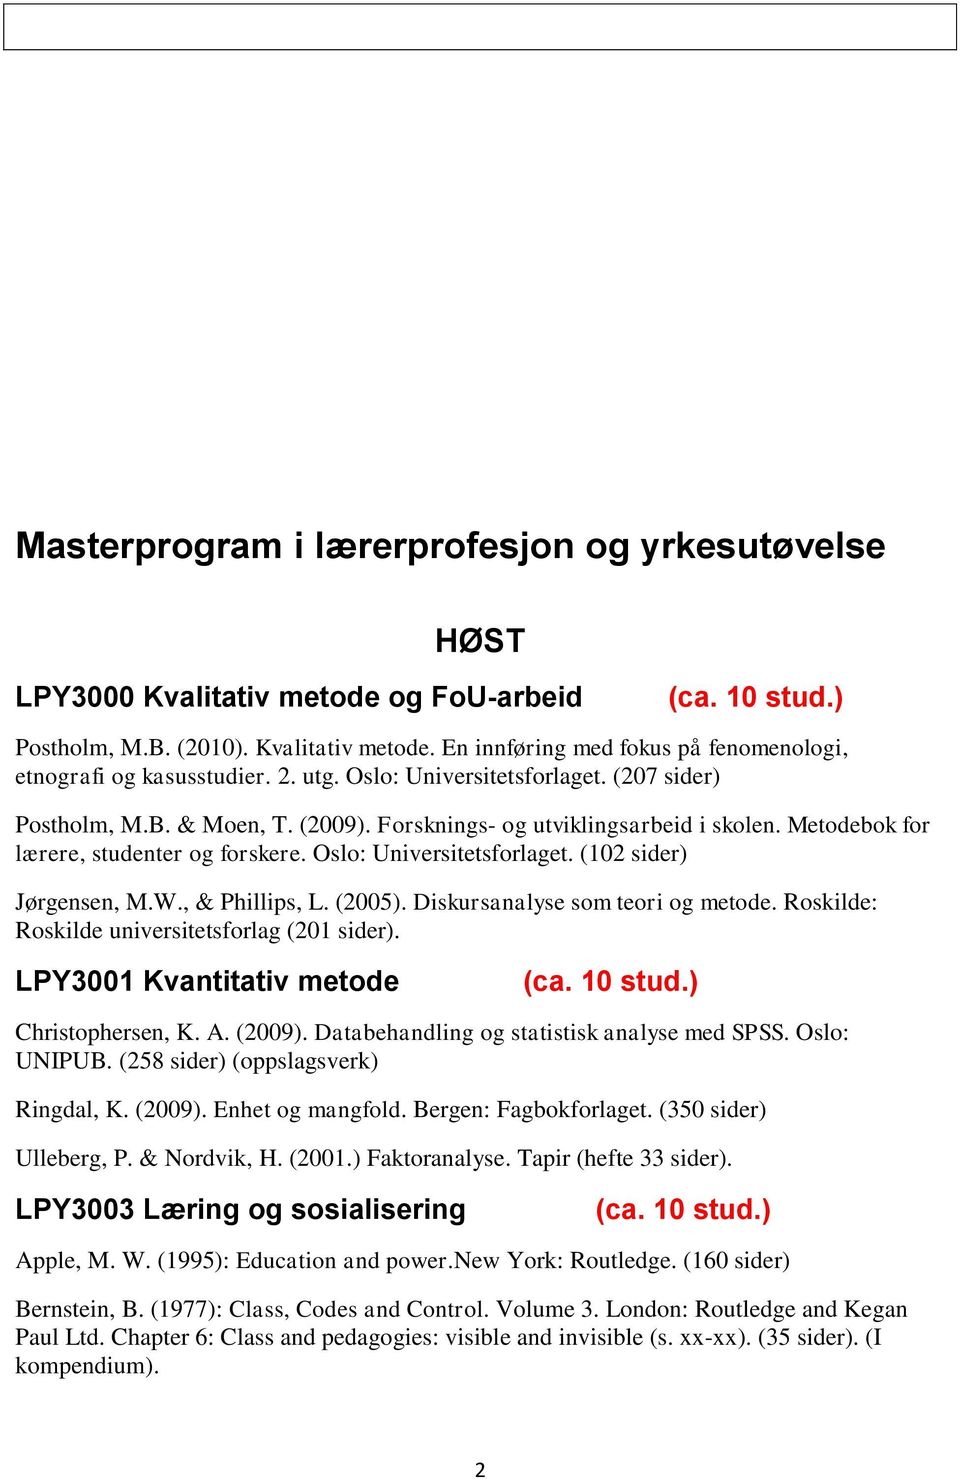 W., & Phillips, L. (2005). Diskursanalyse som teori og metode. Roskilde: Roskilde universitetsforlag (201 sider). LPY3001 Kvantitativ metode Christophersen, K. A. (2009).